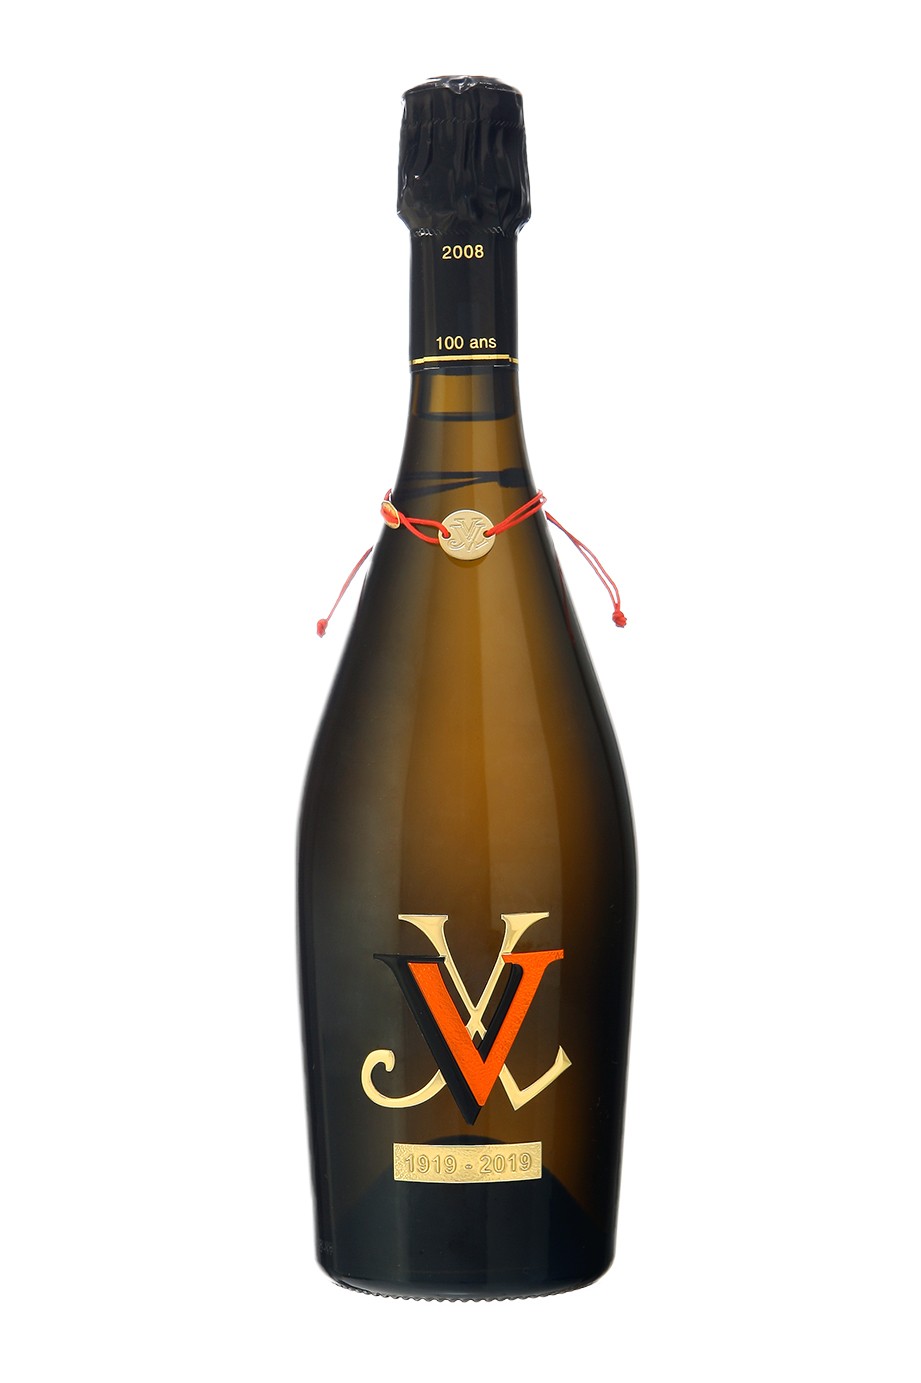 Cuvée Centenaire Blanc de Blancs Cru 2008 Millésime Veuve Champagne Grand Lanaud 